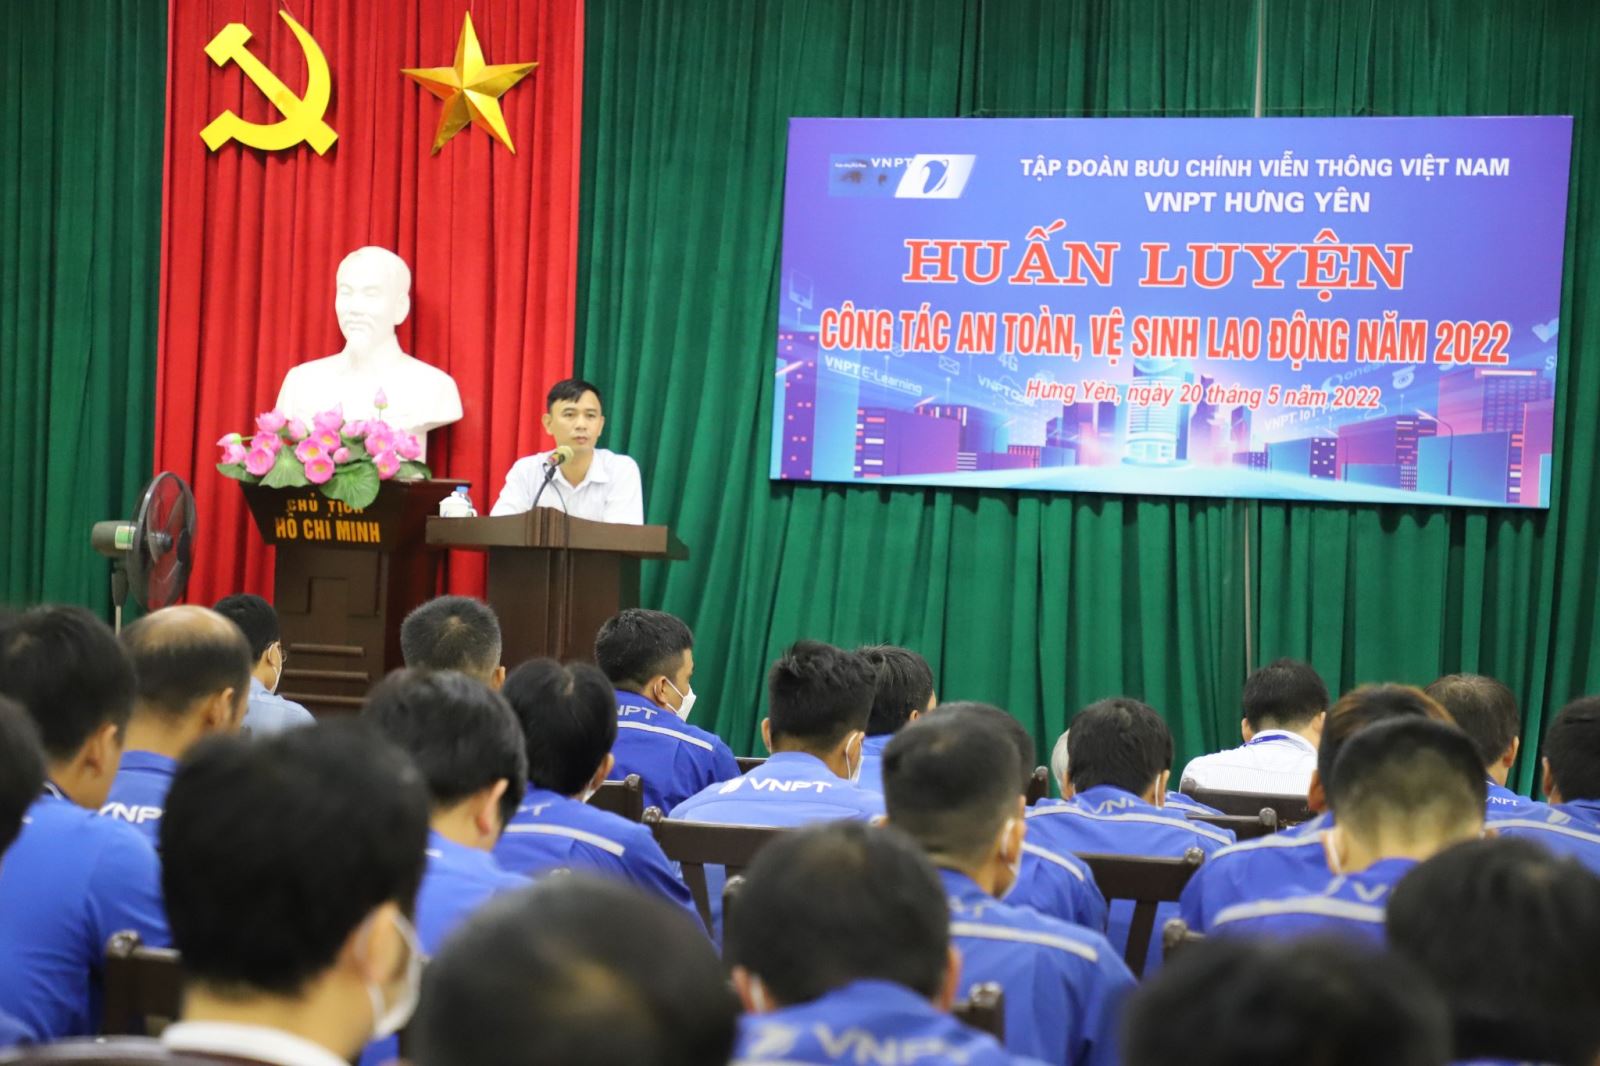 VNPT Hưng Yên huấn luyện an toàn lao động cho CBCNV